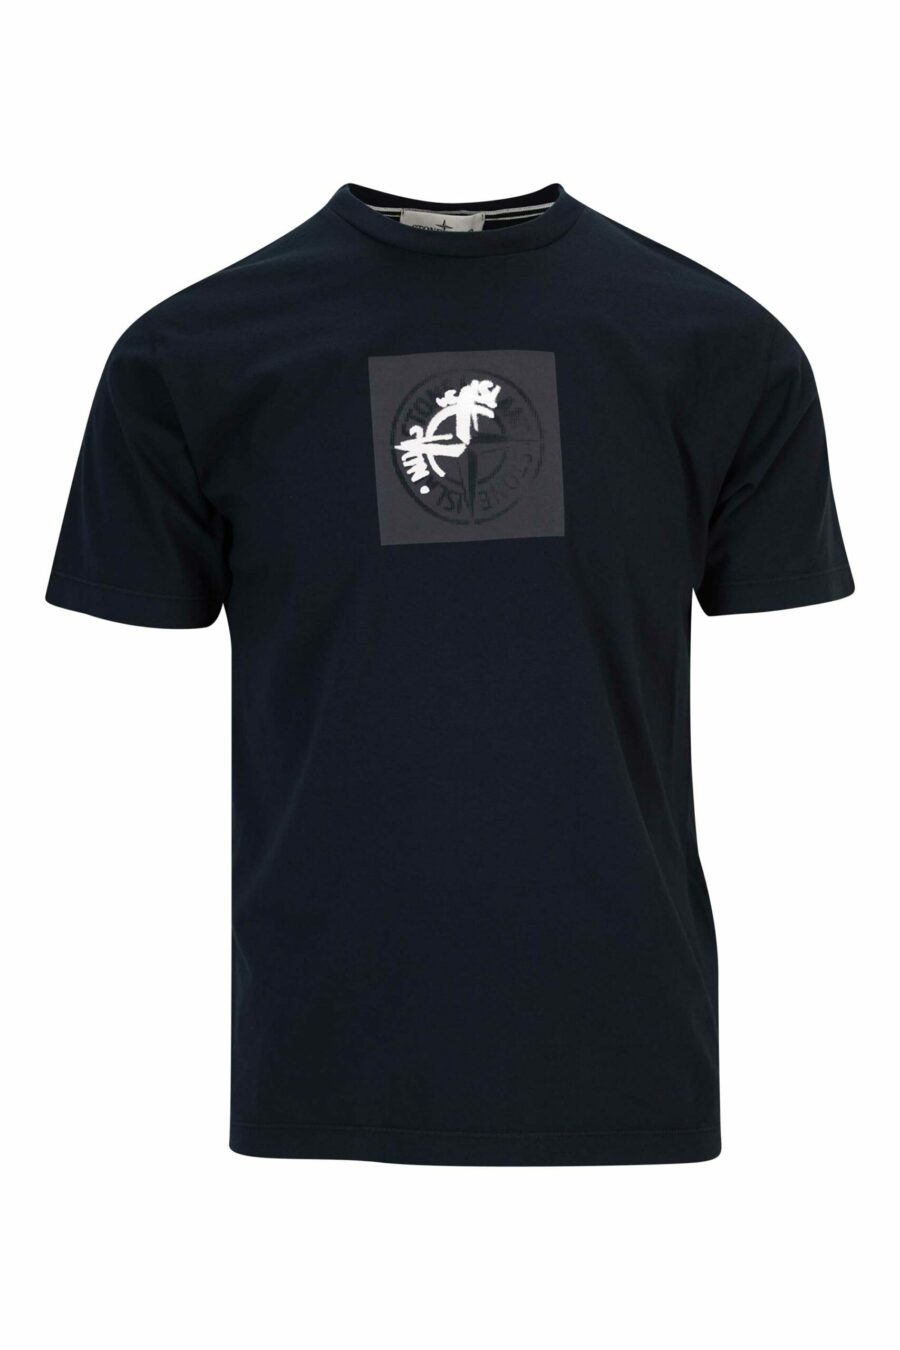 Camiseta azul oscuro con estampado logo brújula centrado - 8052572911934 scaled